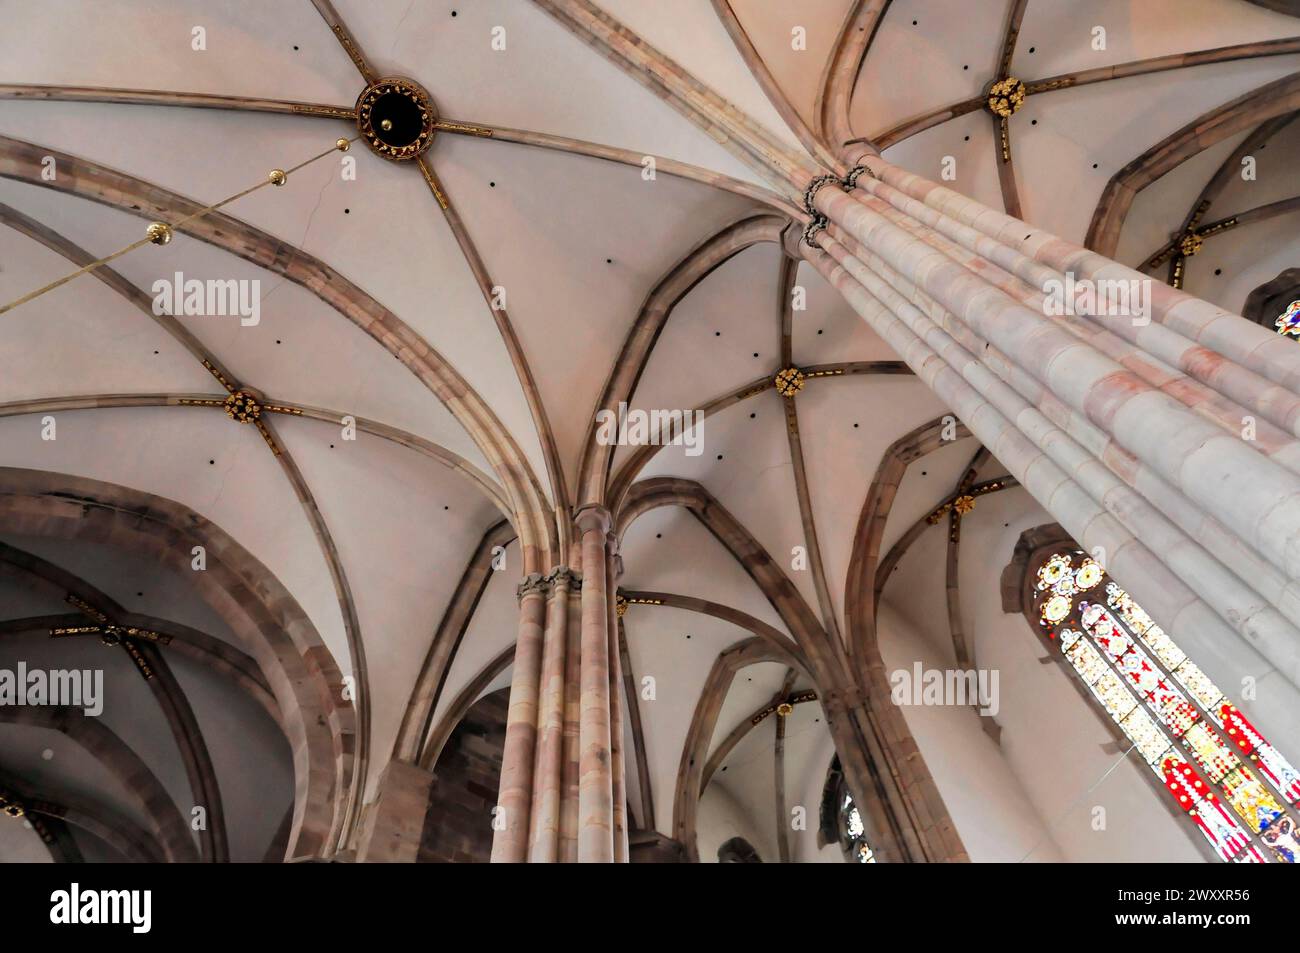 Église luthérienne Saint Thomas, église Saint Thomas de Strasbourg, Alsace, plafond voûté et colonnes à l'intérieur d'une église à l'architecture gothique Banque D'Images